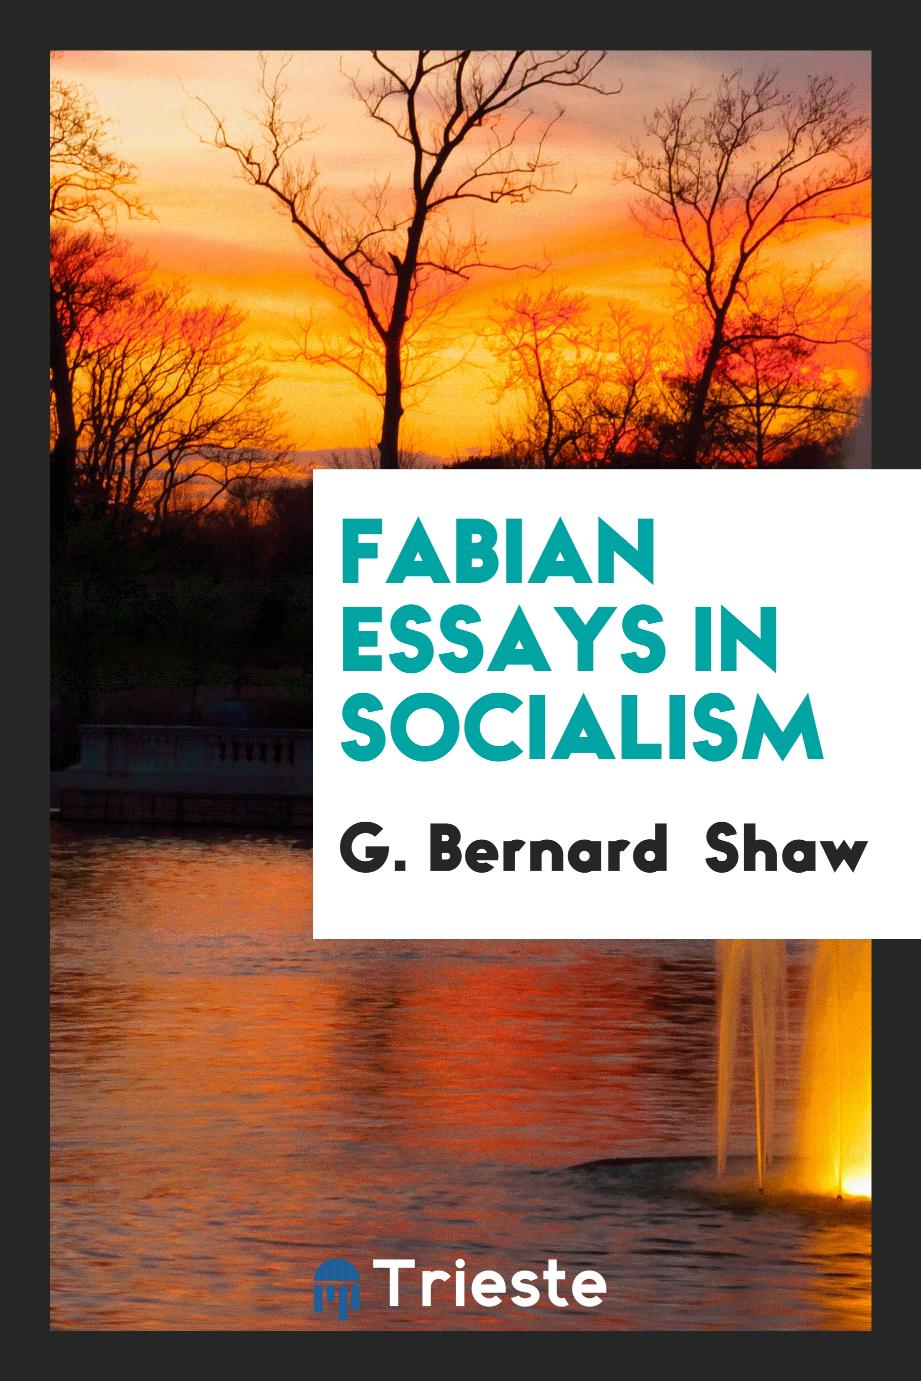 G. Bernard Shaw - Fabian Essays in Socialism